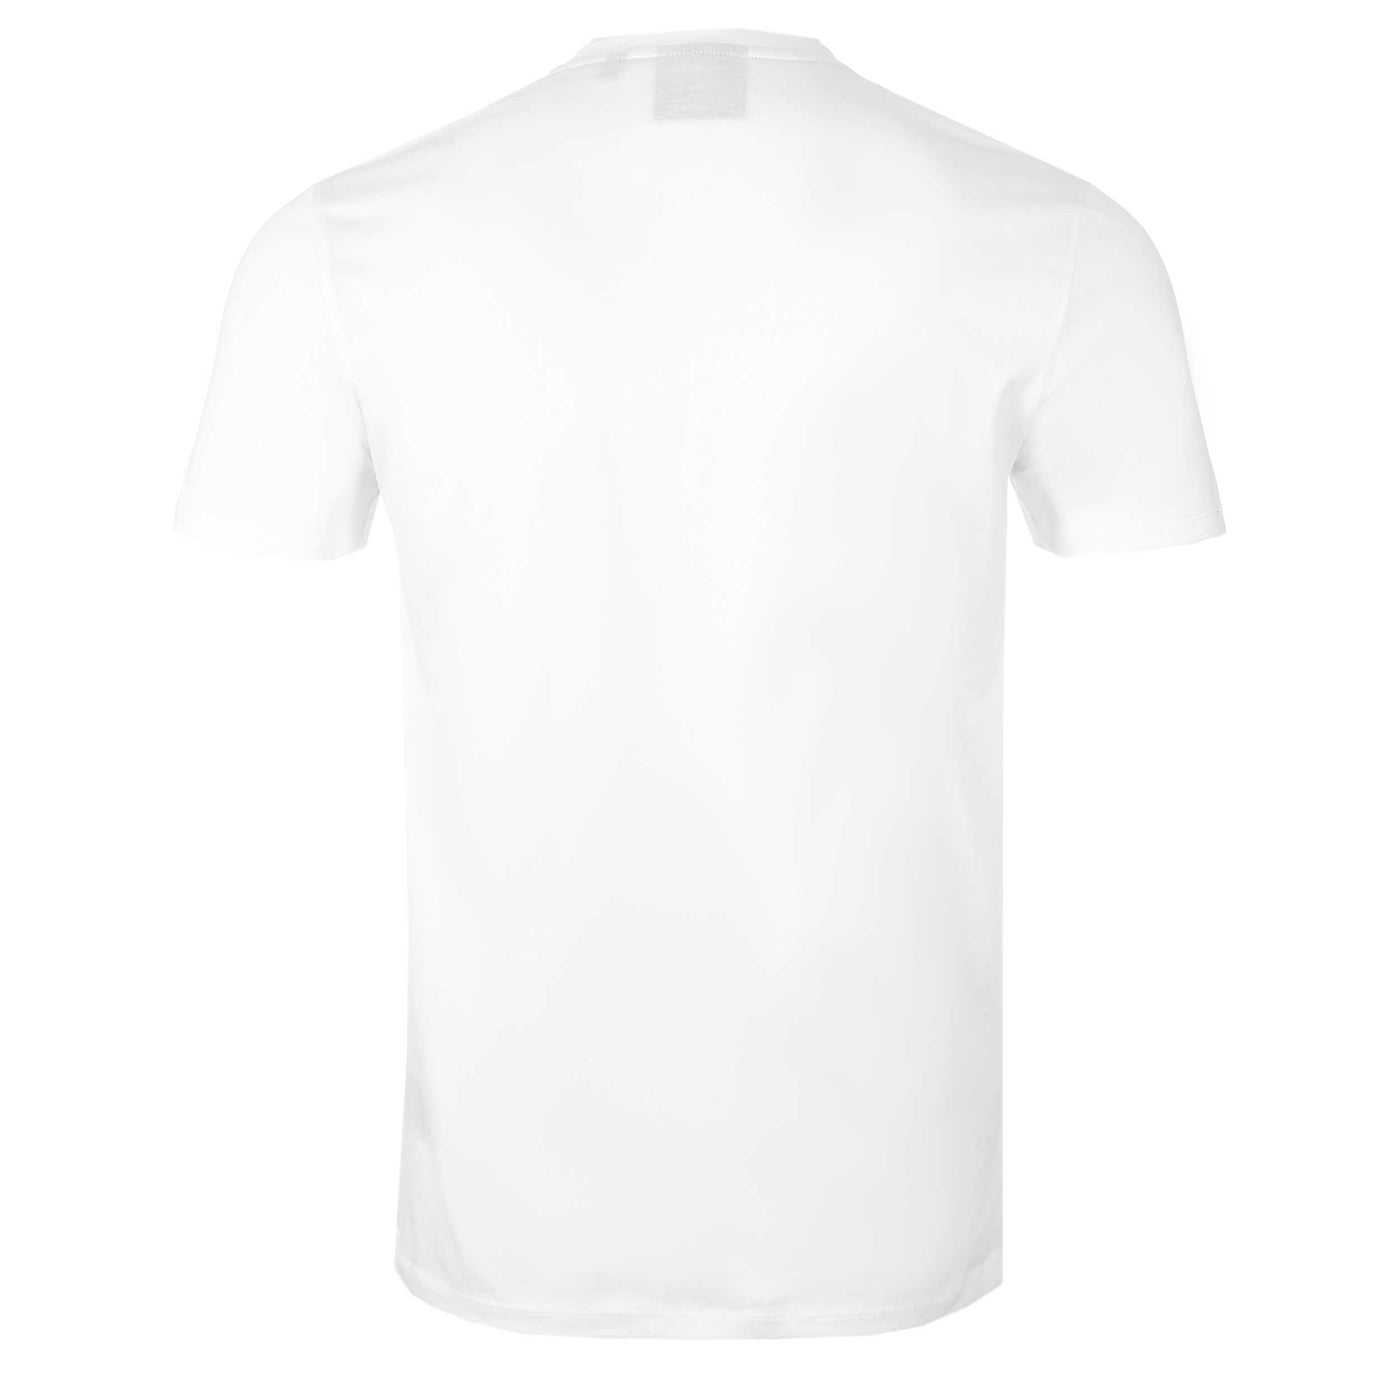 Sandbanks Badge Logo T Shirt in White Back